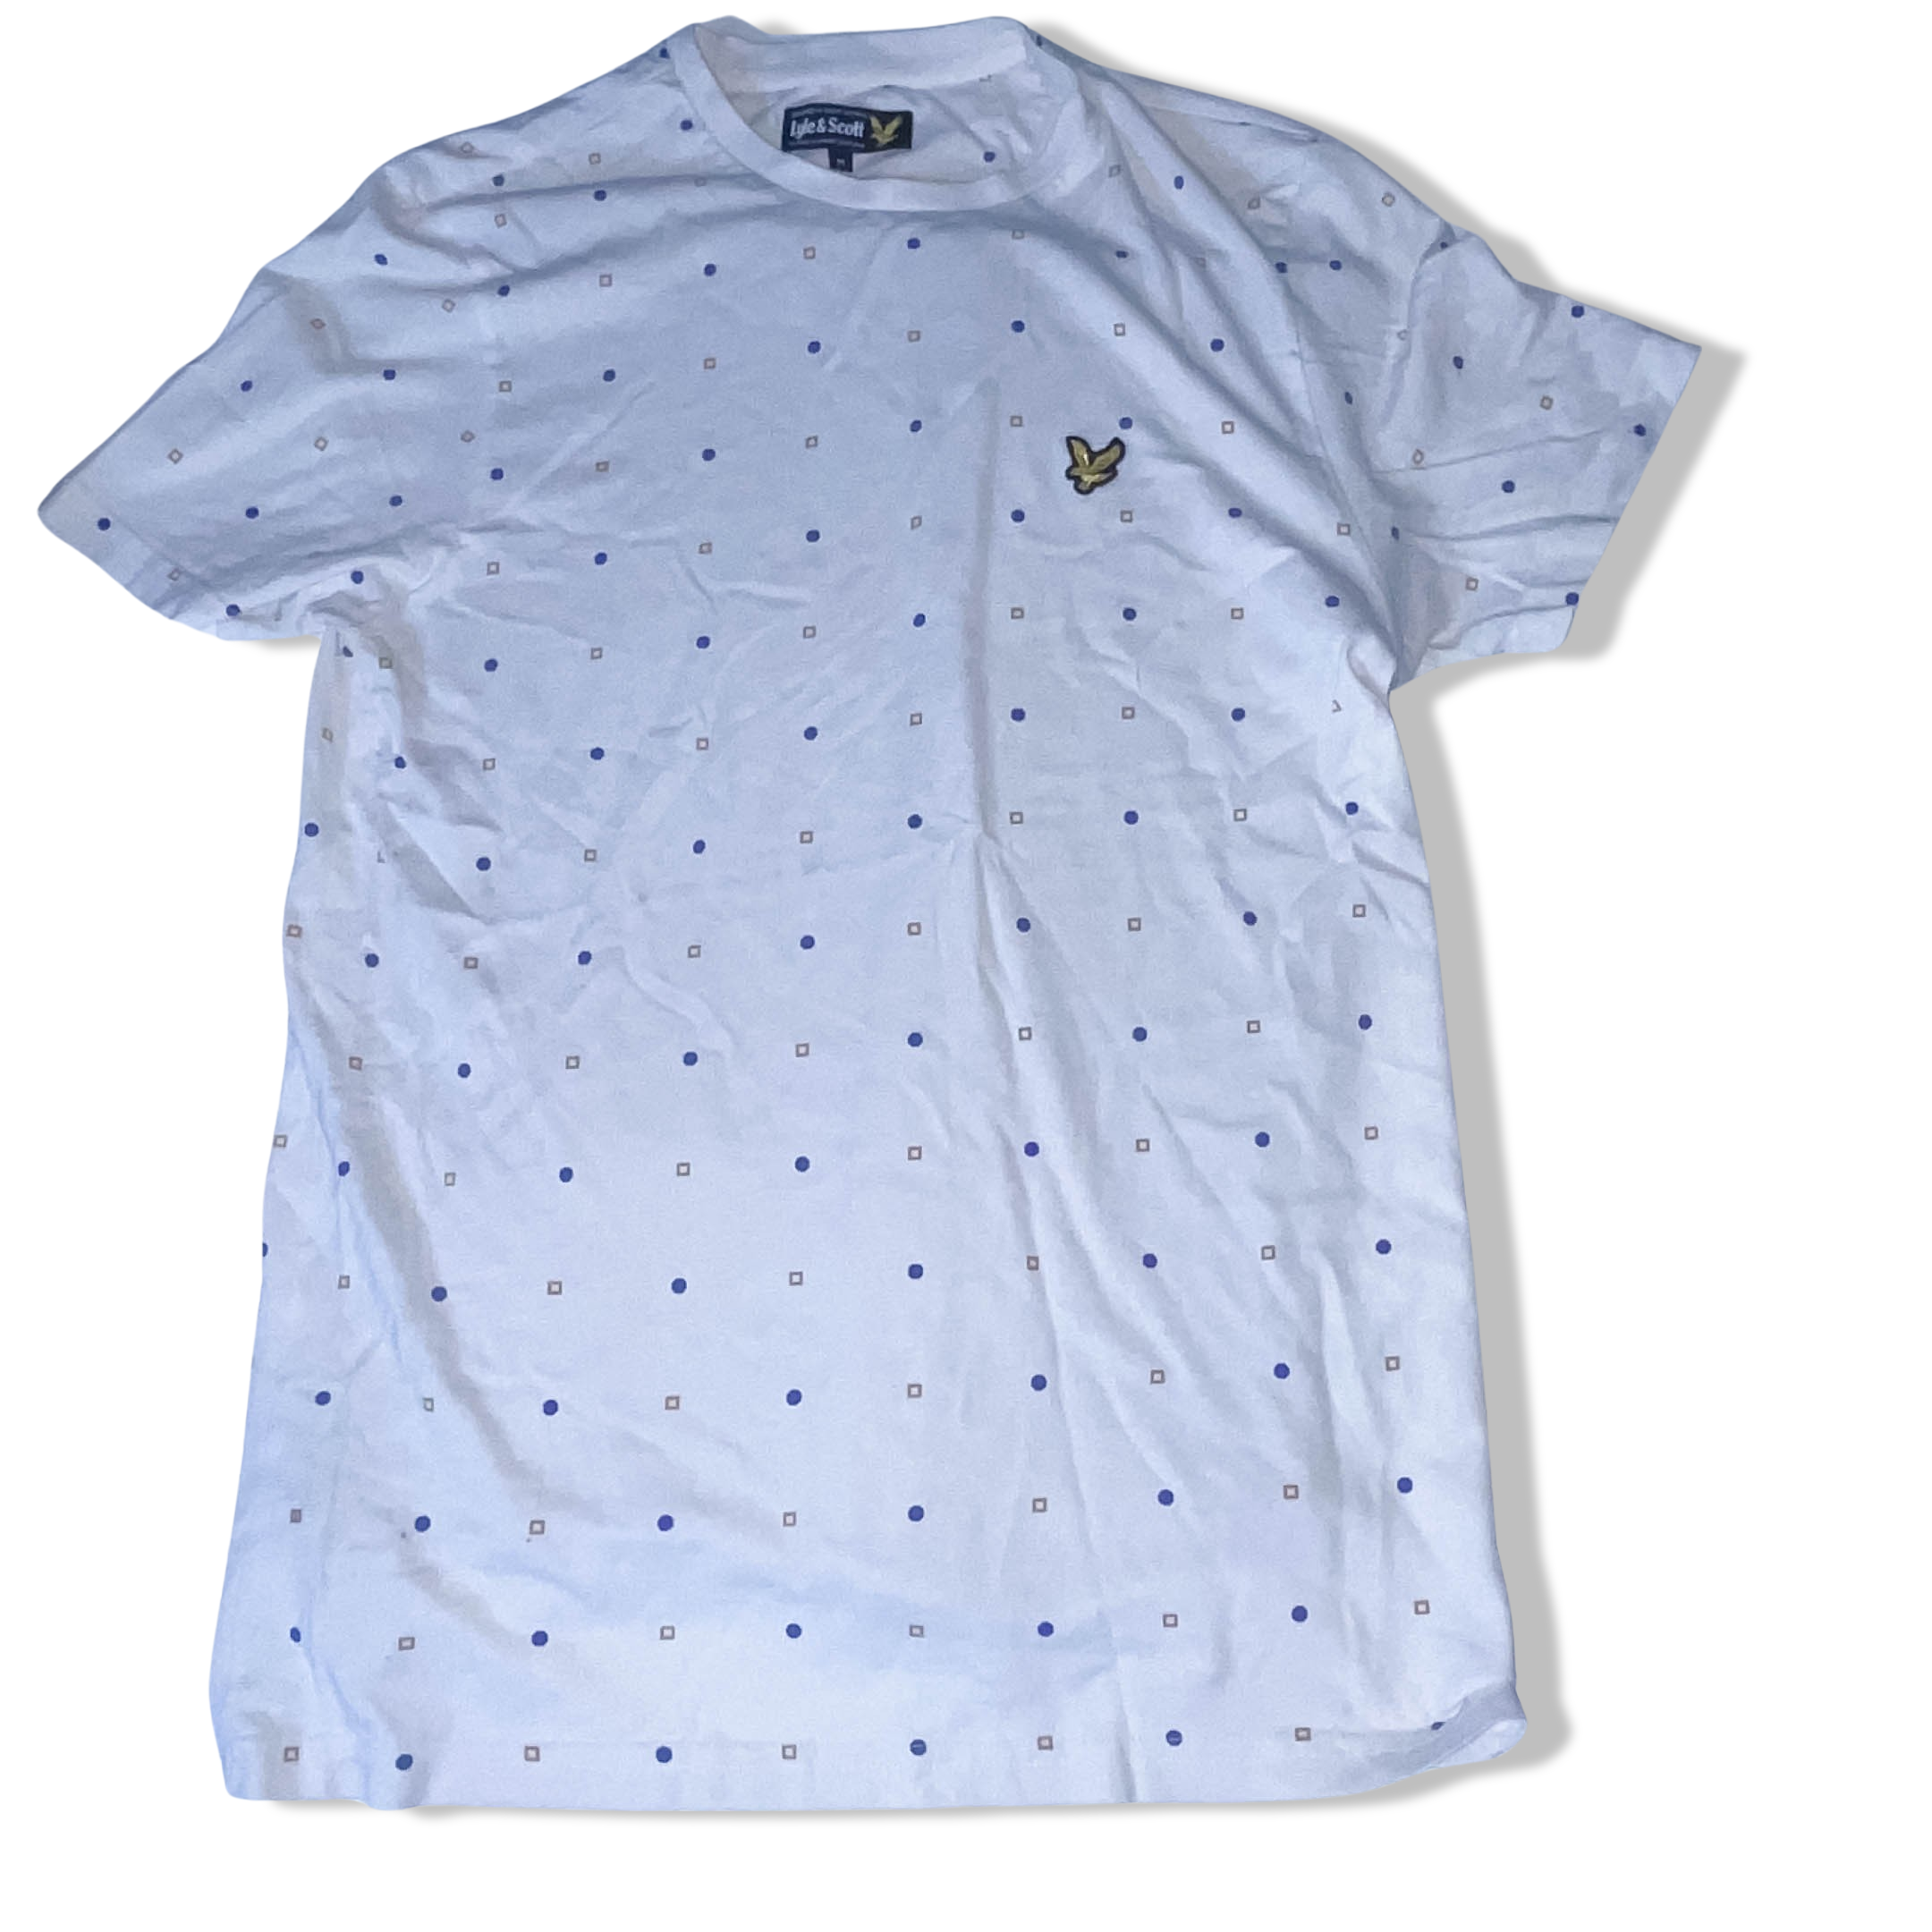 Vintage White Llye & Scott shape pattern medium short sleeve tshirt